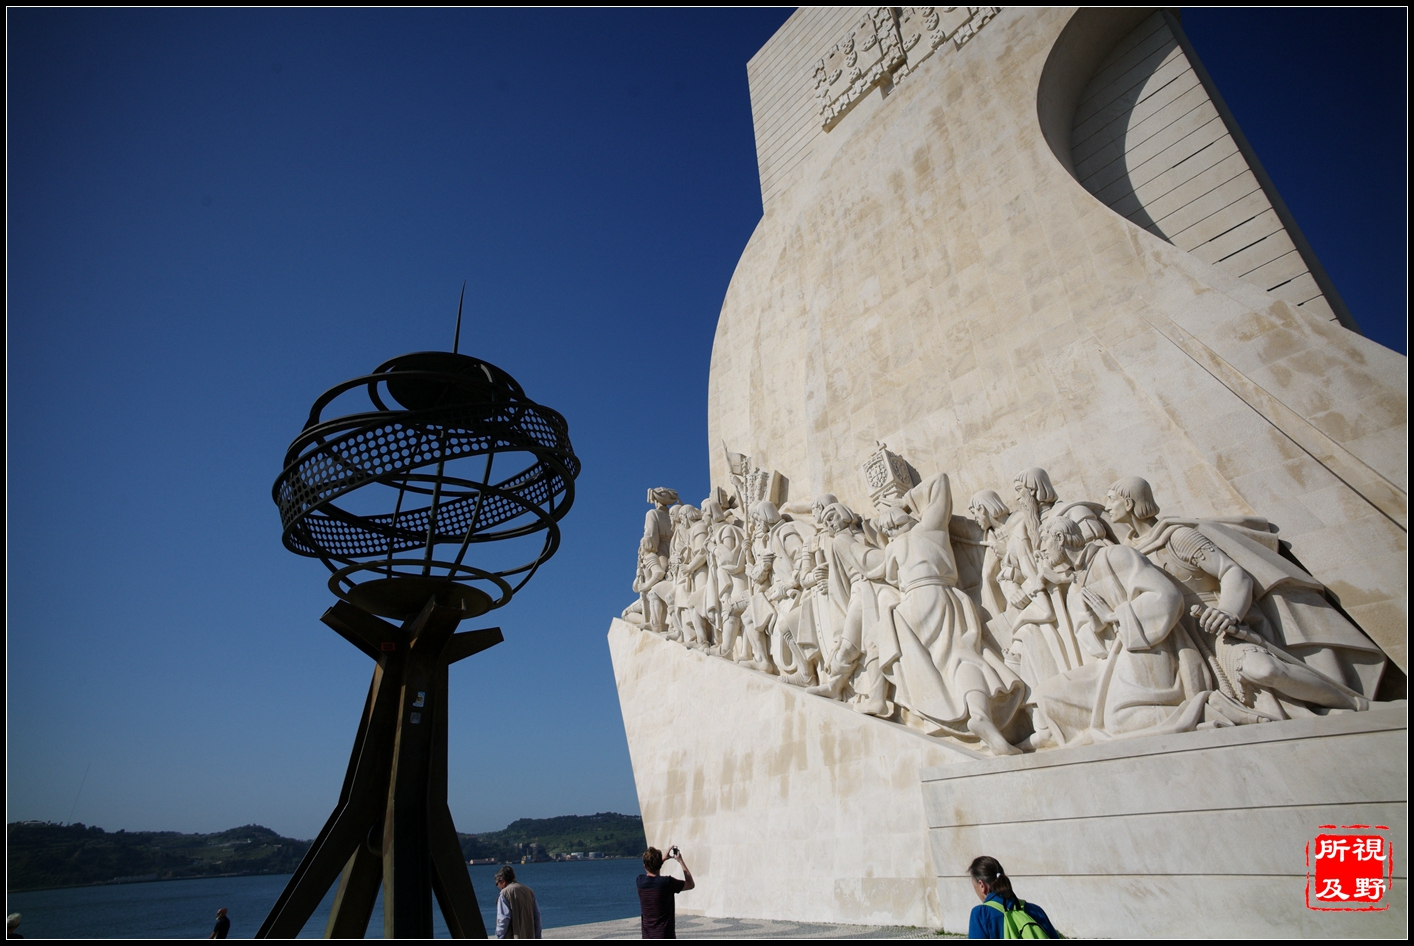 认识葡萄牙要从航海开始:贝伦塔与航海纪念碑_搜狐旅游_搜狐网